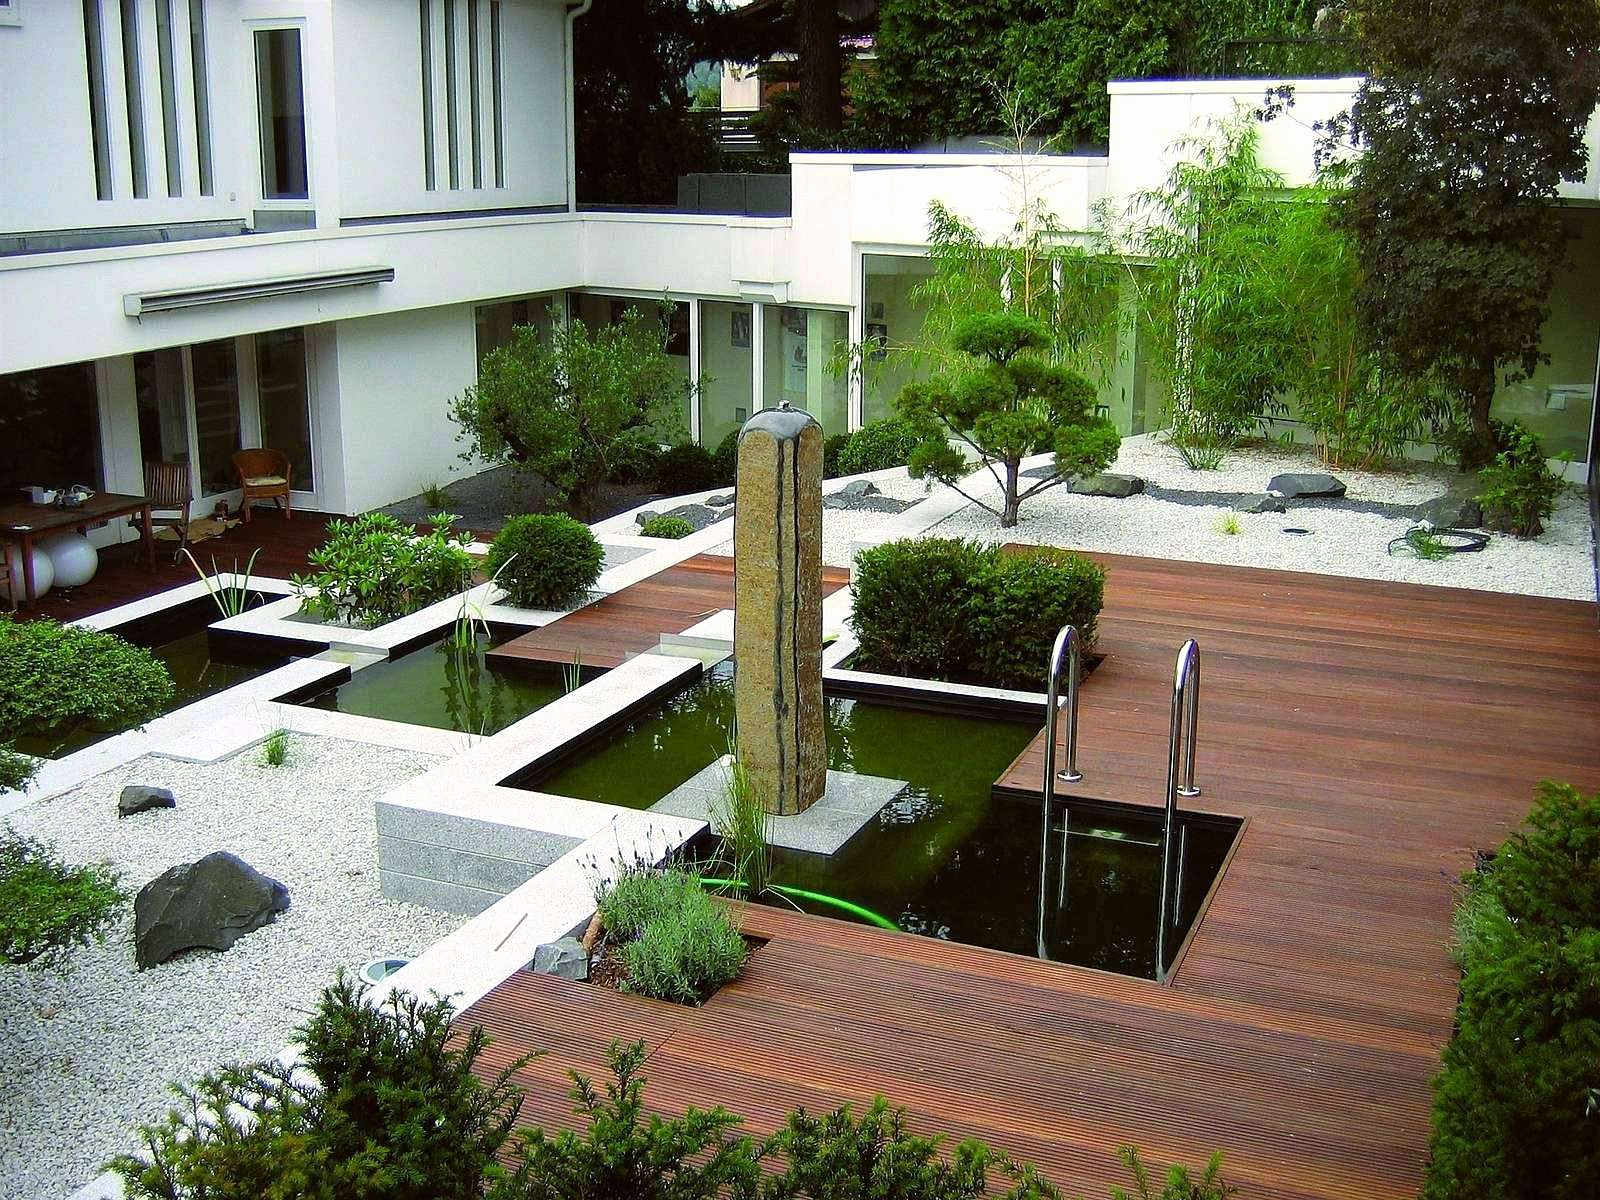 Gartengestaltung Steine Einzigartig Terrasse Anlegen Ideen Genial Garten Gestalten Ideen Bilder